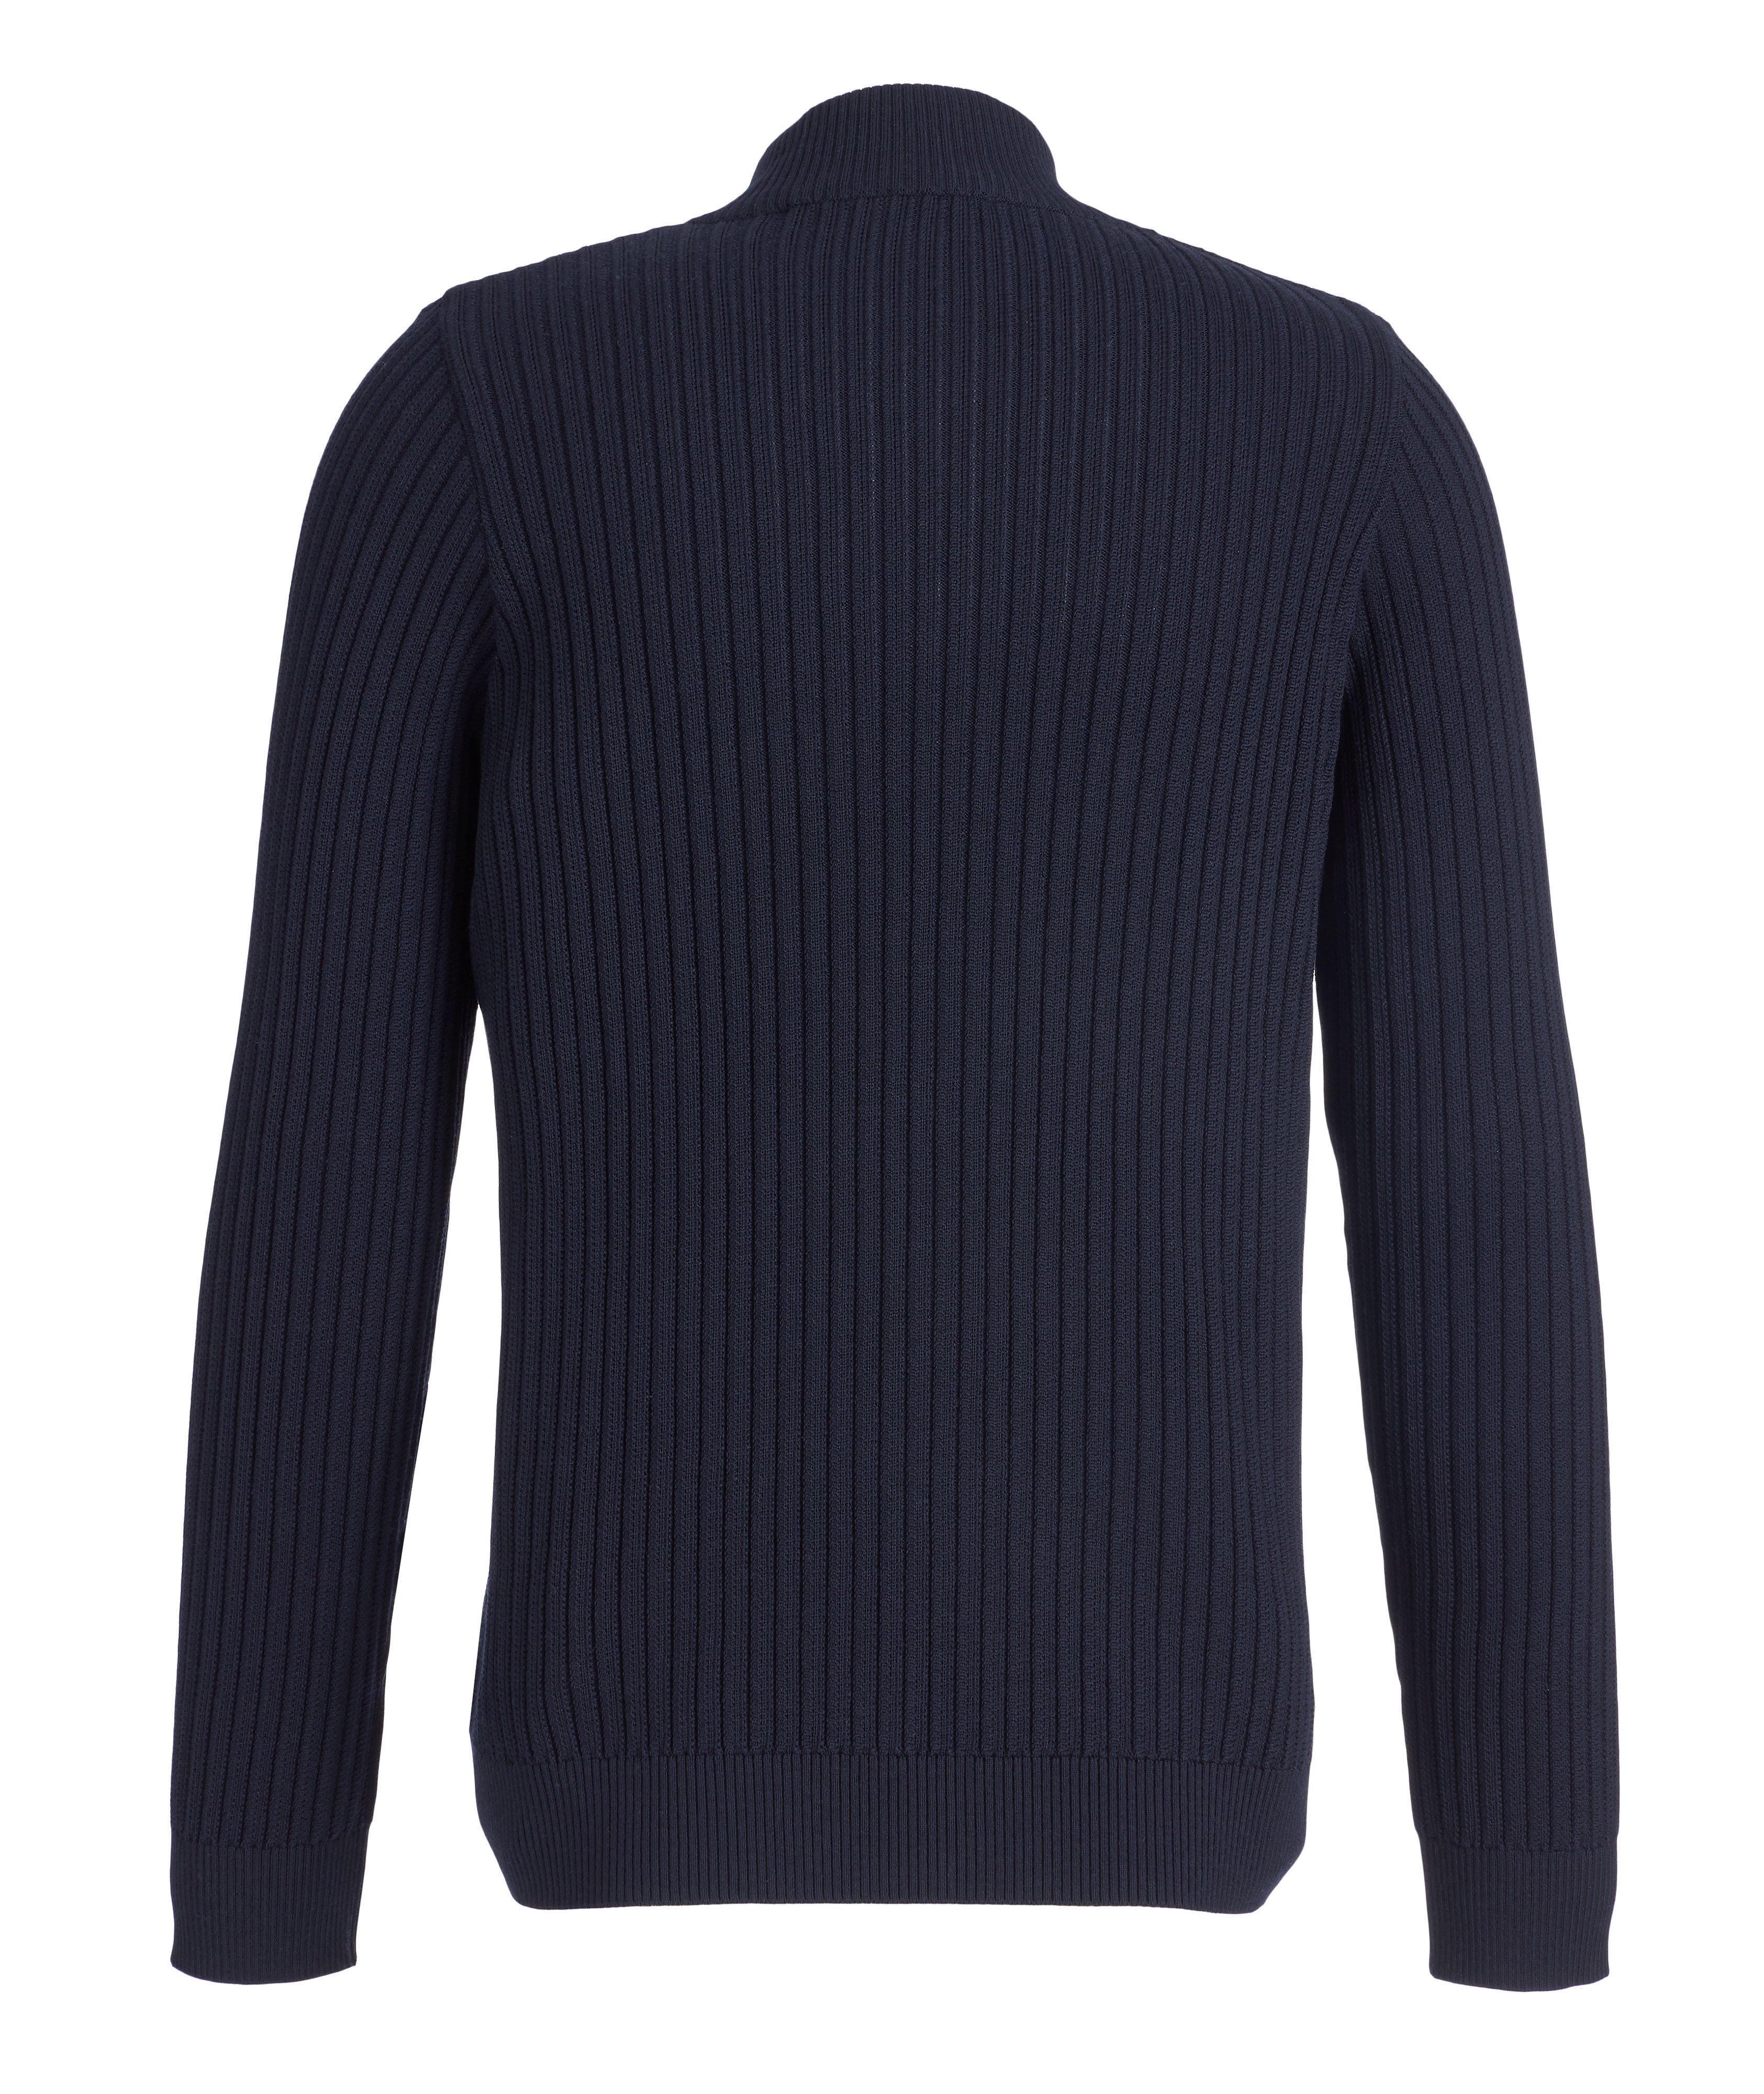 Maurizio Baldassari Brera Wool Zip-Up Cardigan | Sweaters & Knits ...